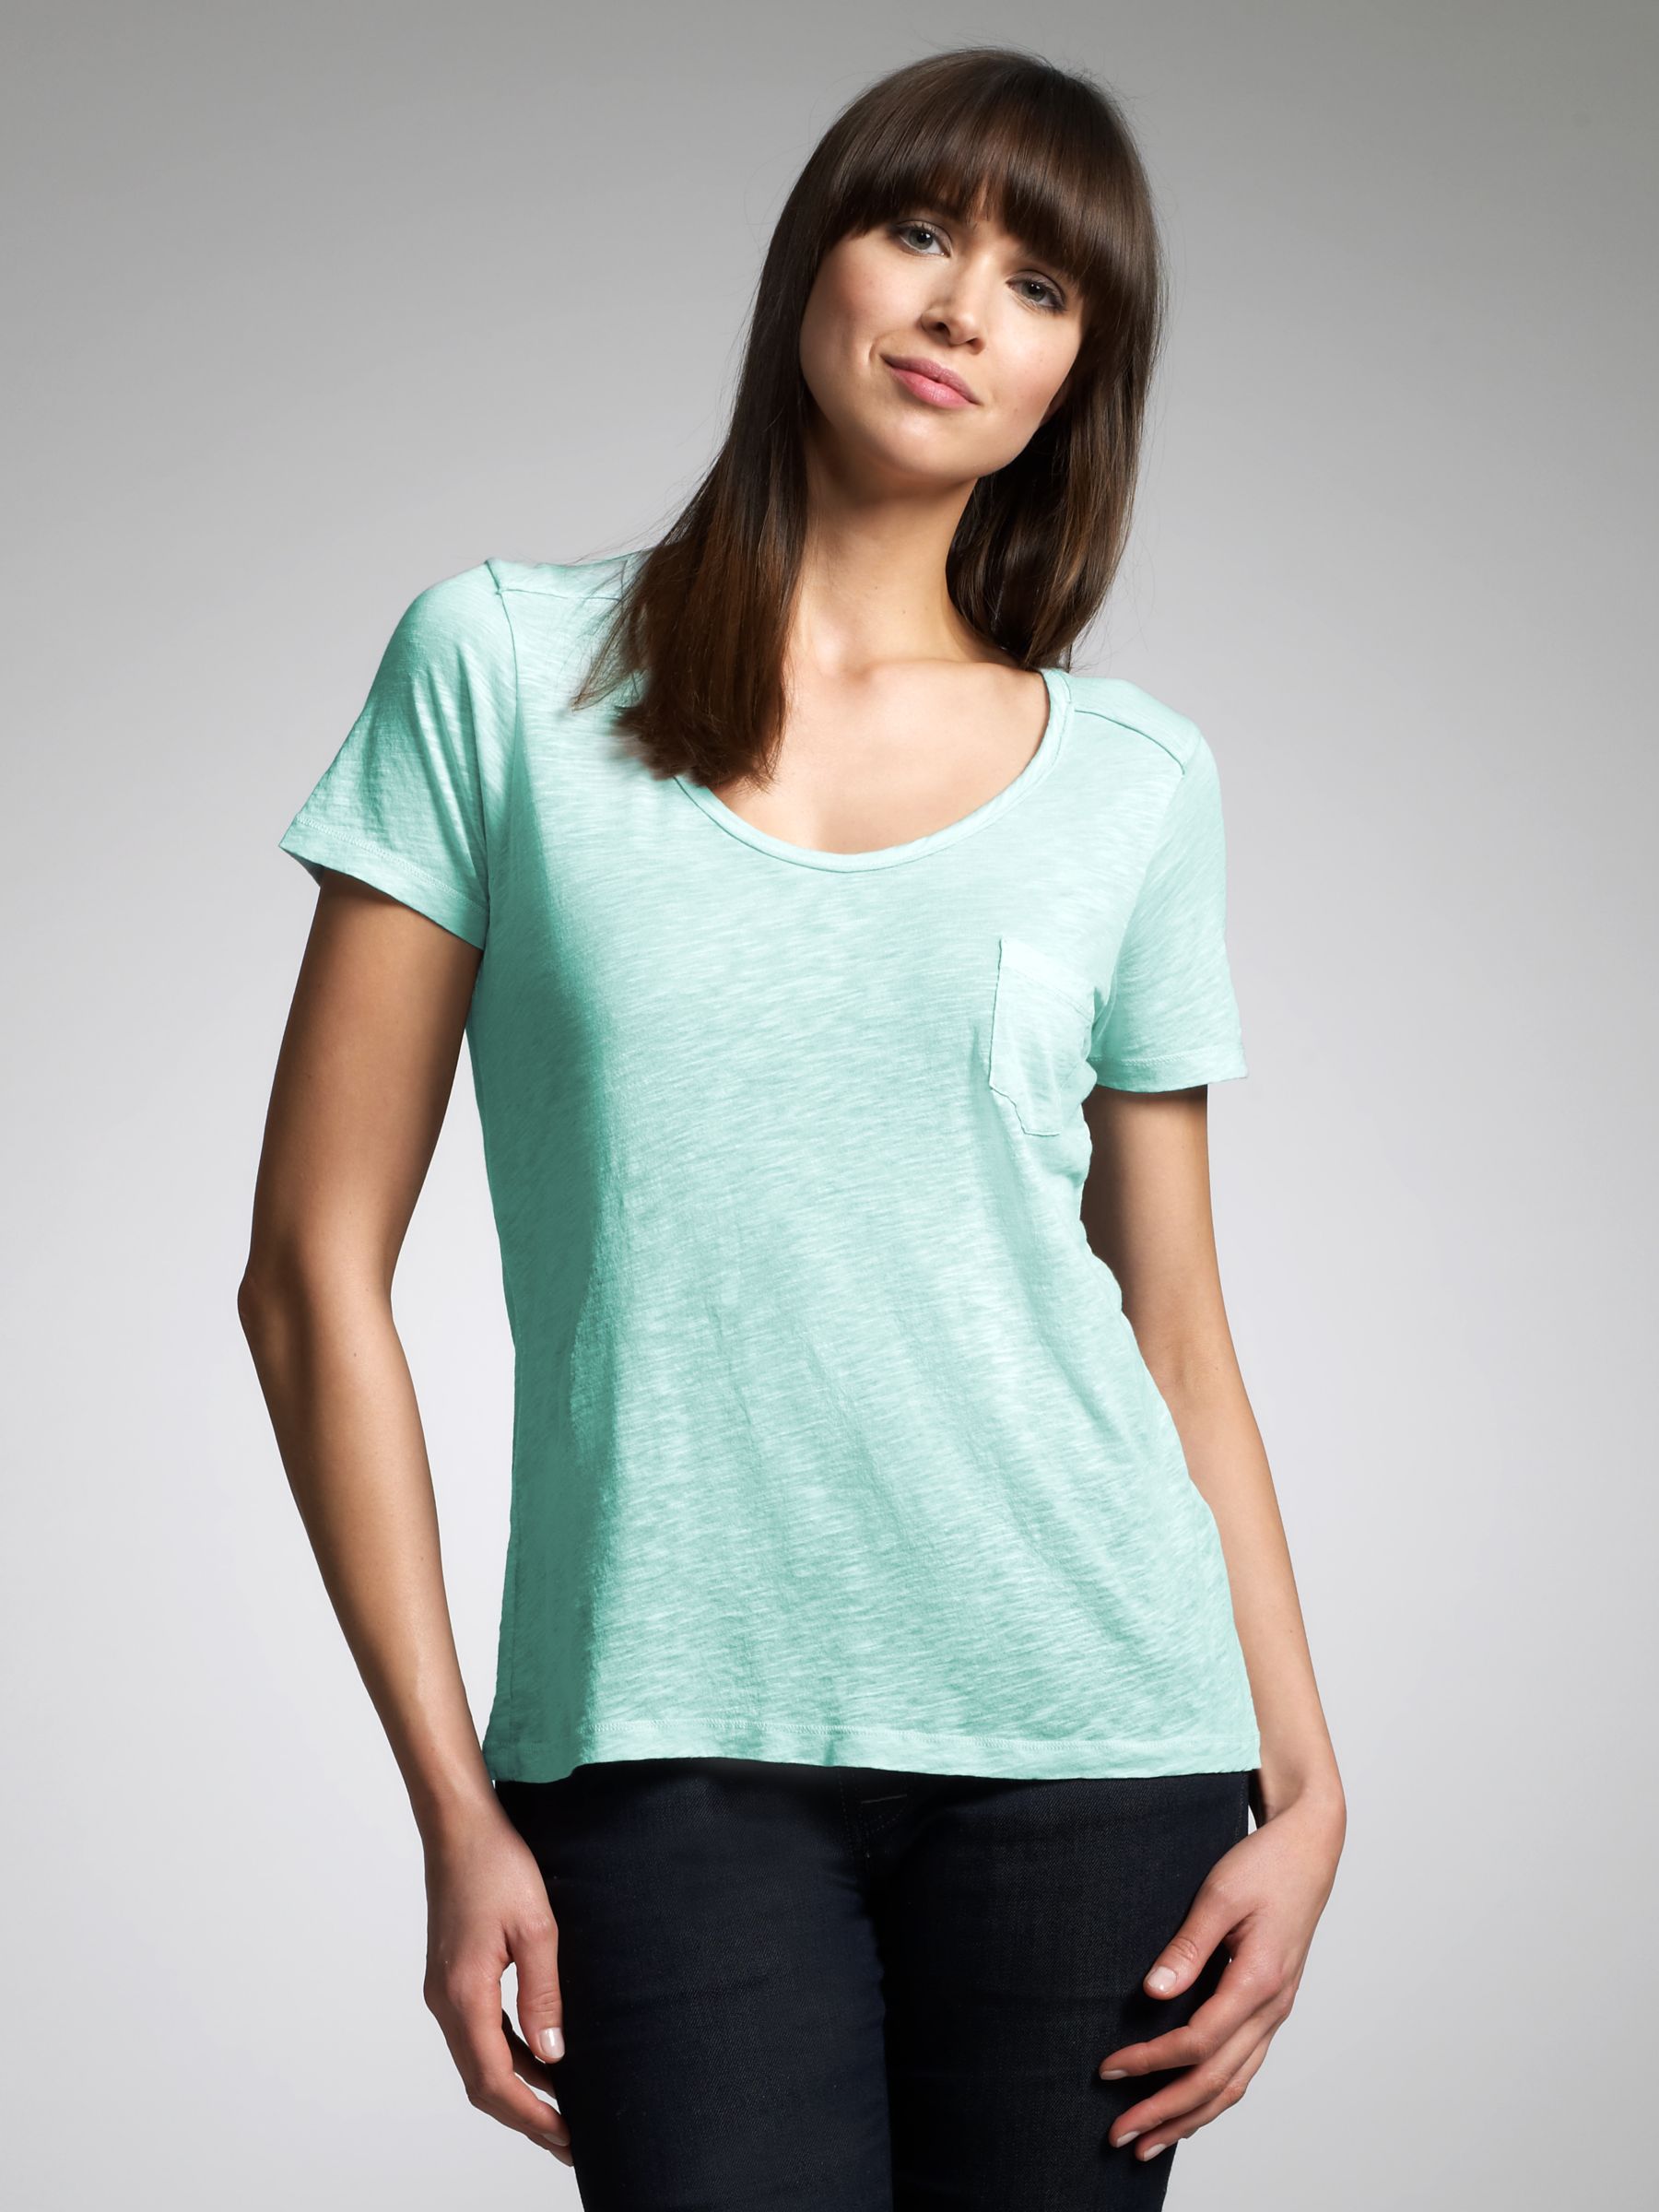 Freida Cotton T-Shirt, Pale blue